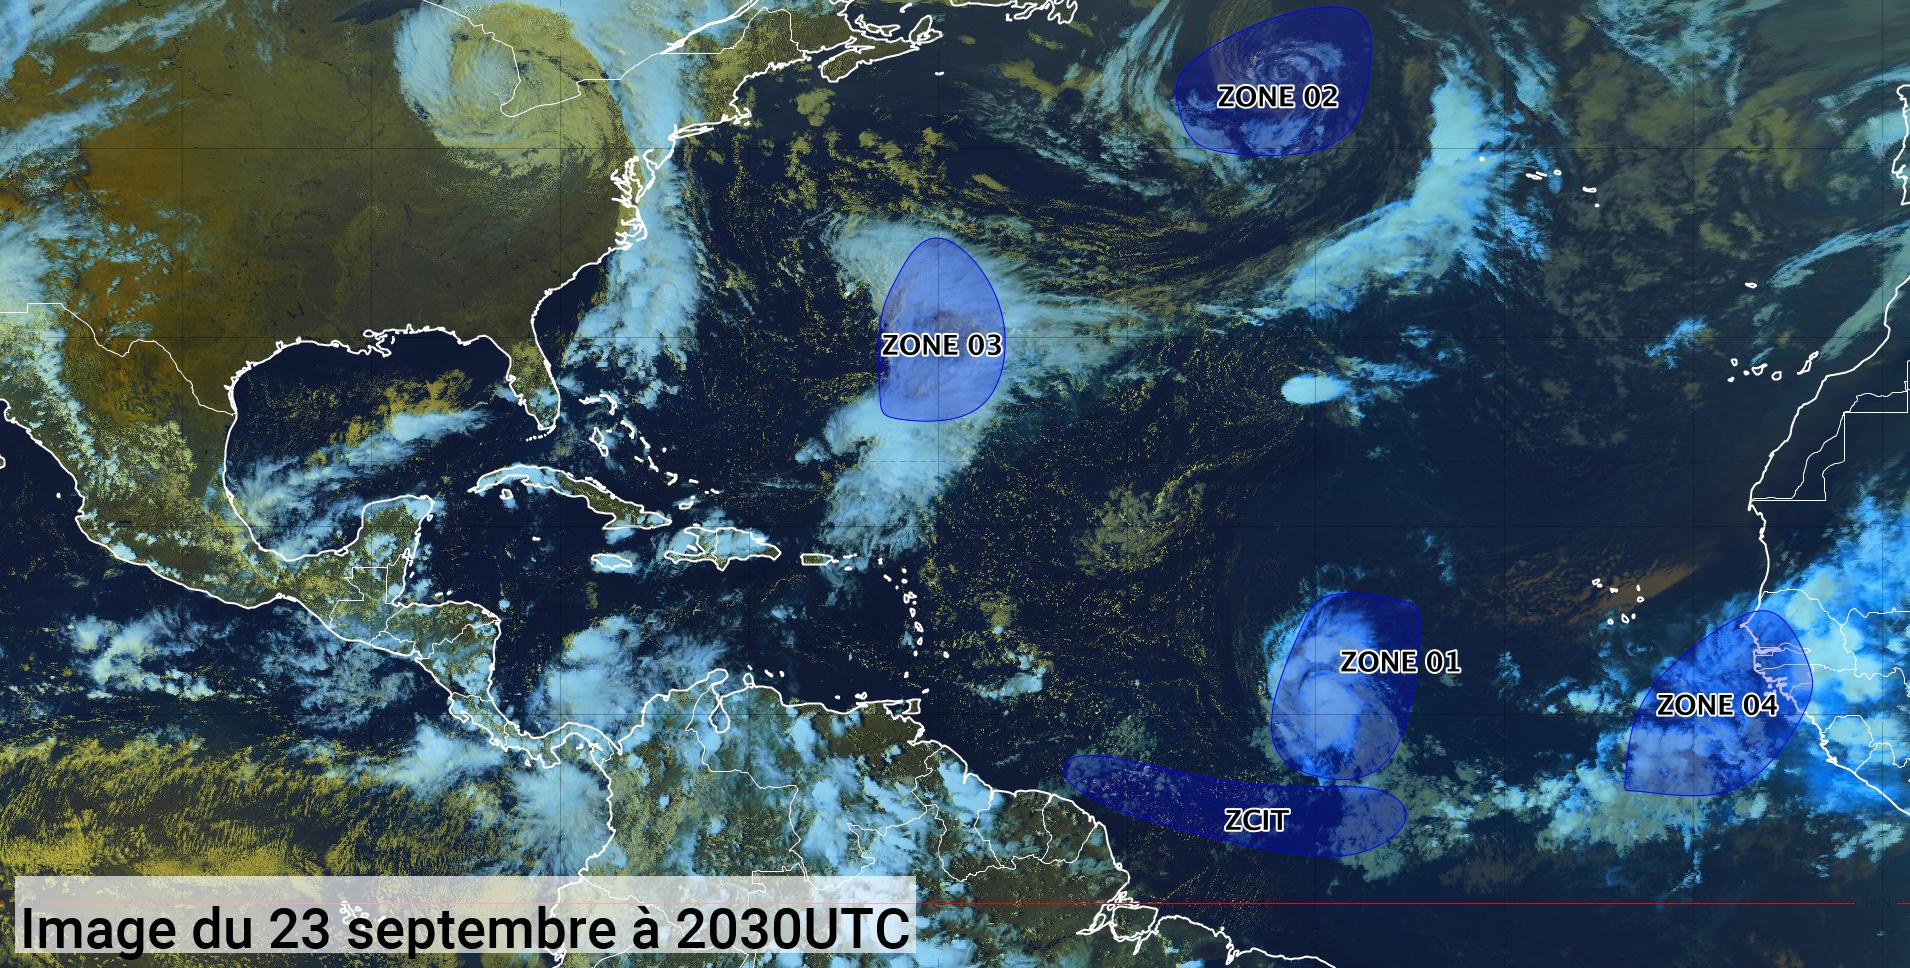     La tempête tropicale Sam se renforce rapidement (bulletin du 23/09/21)

